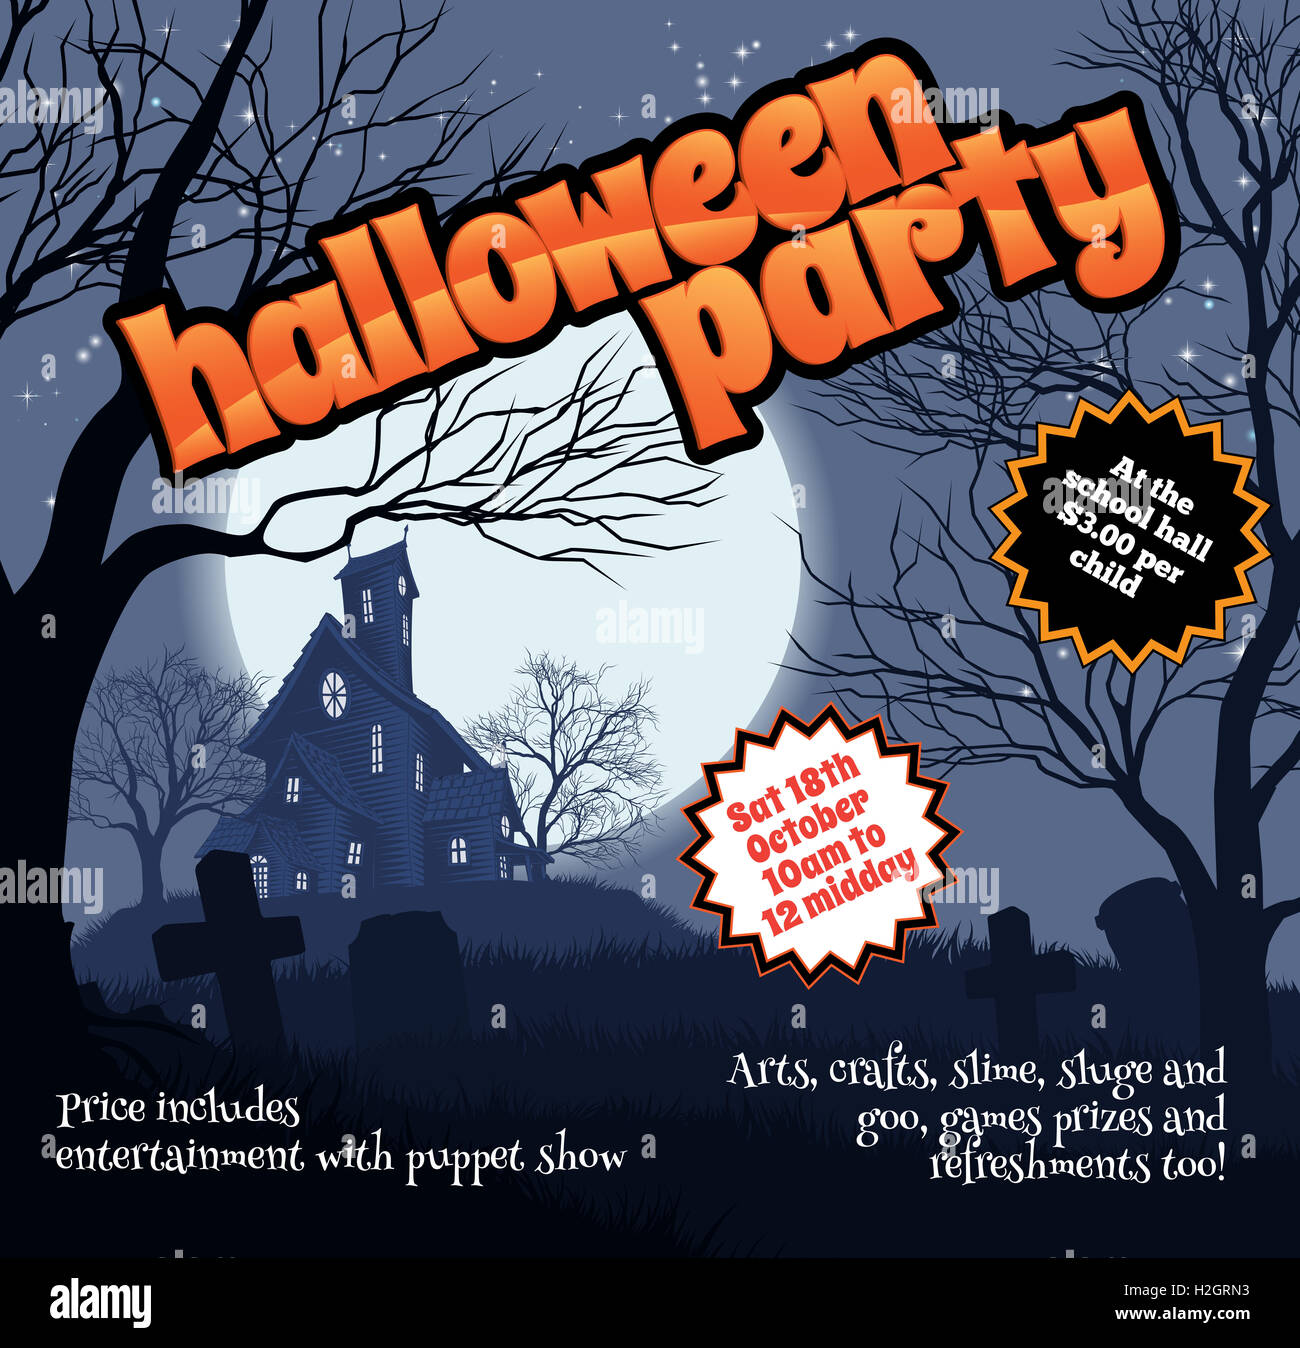 Una festa di Halloween flyer pieghevole con un spooky Haunted House e il cimitero Foto Stock